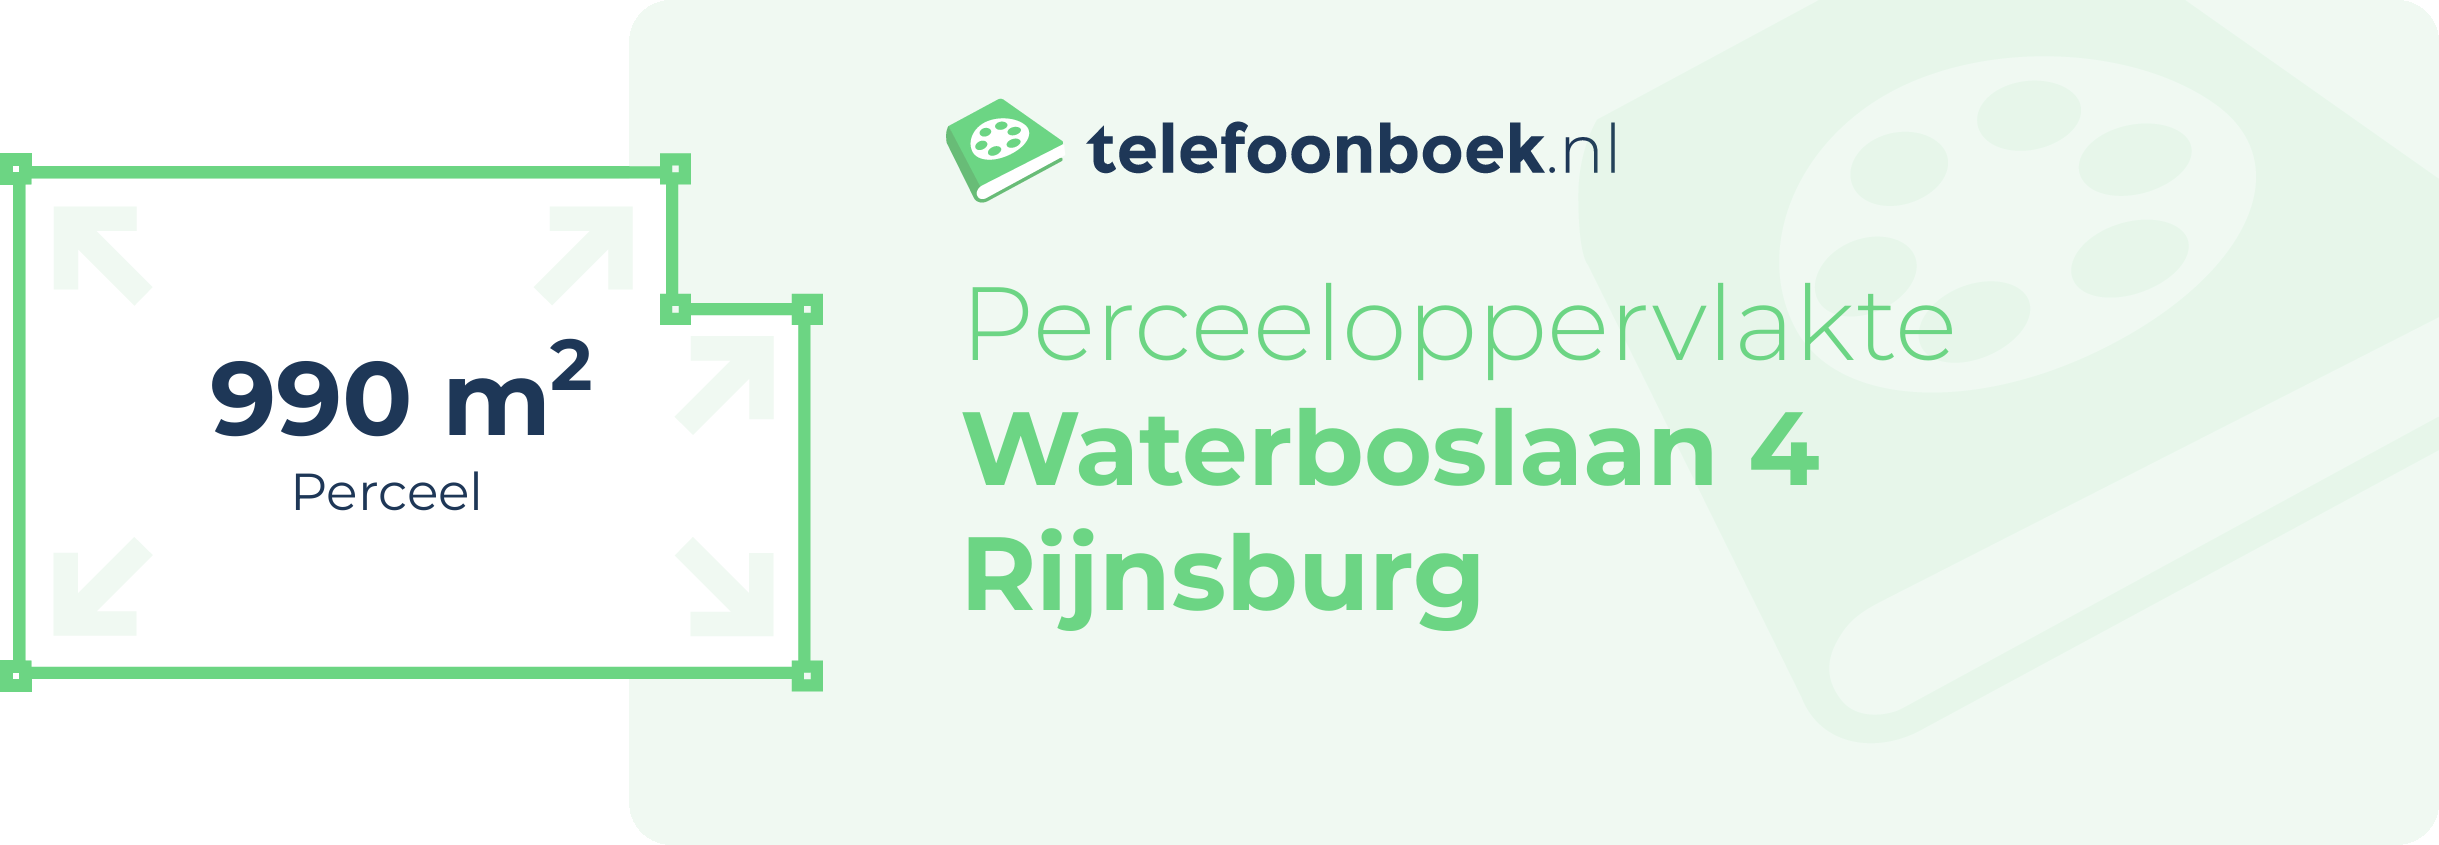 Perceeloppervlakte Waterboslaan 4 Rijnsburg